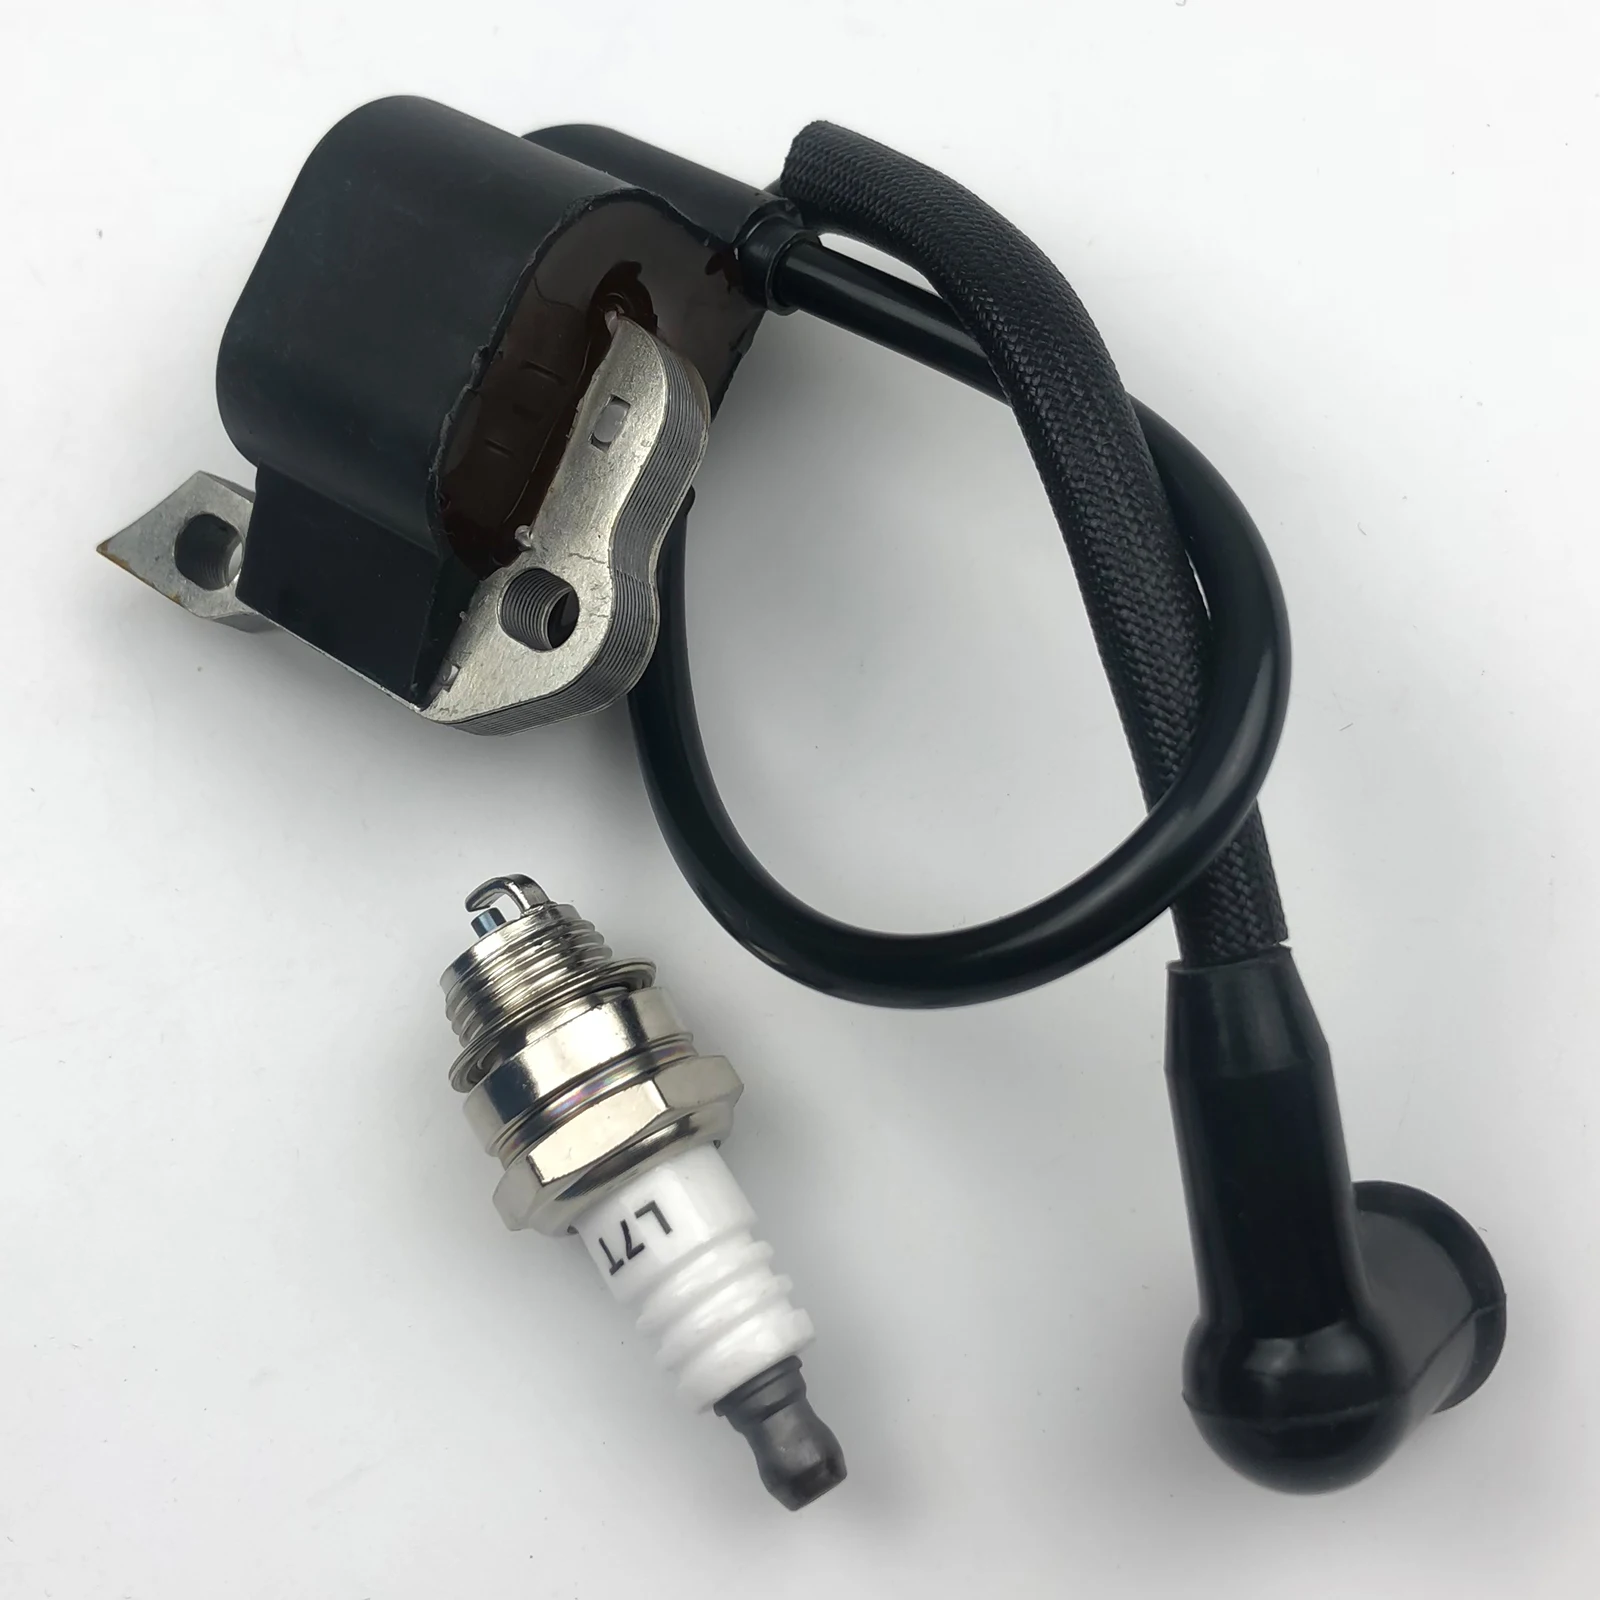 

2Pcs/set Ignition Coil with Spark Plug For Stihl SR320 SR400 BR340 BR380 BR420 BR320 SR340 SR420 Blowers Replace 4203-400-1301